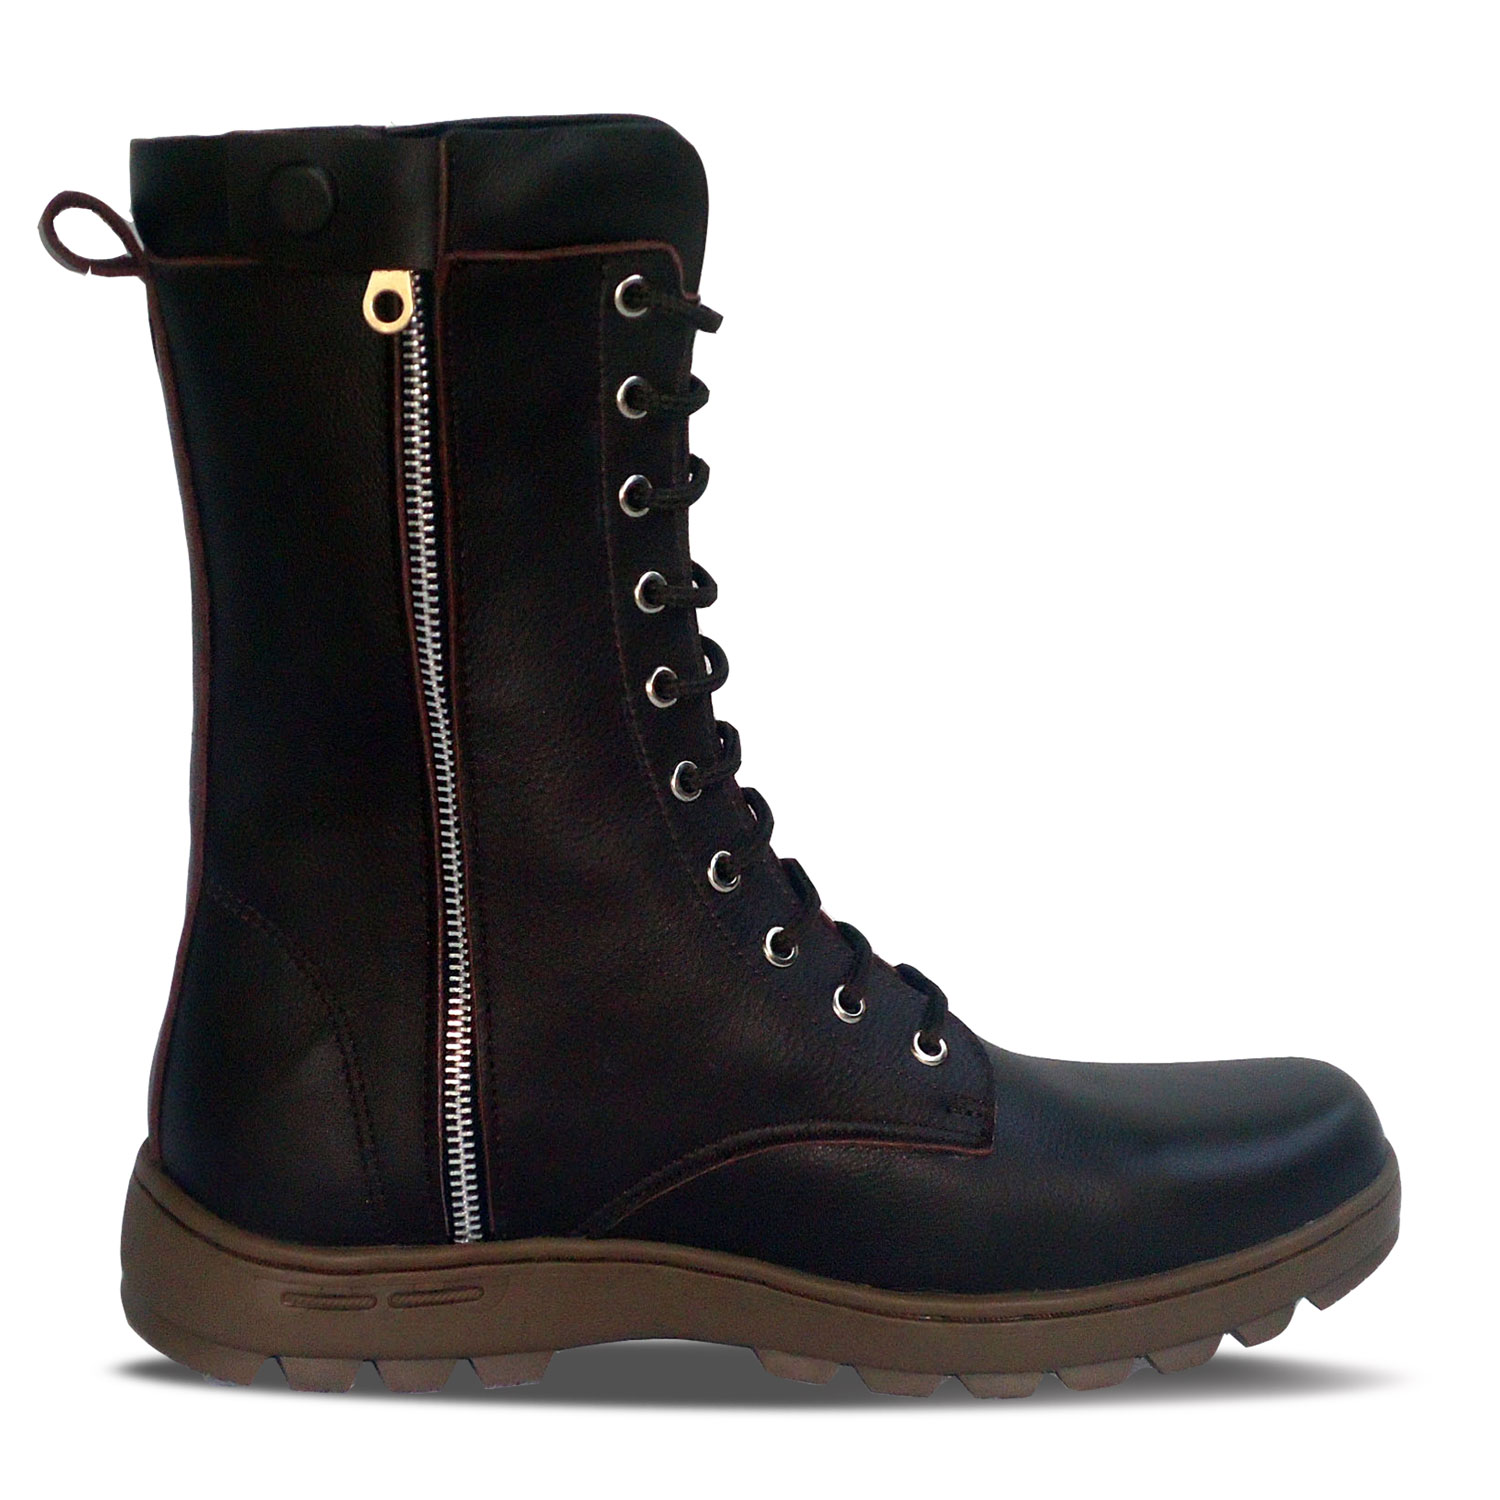 sepatu kulit pria derby boots B11 brown - inside - atmal